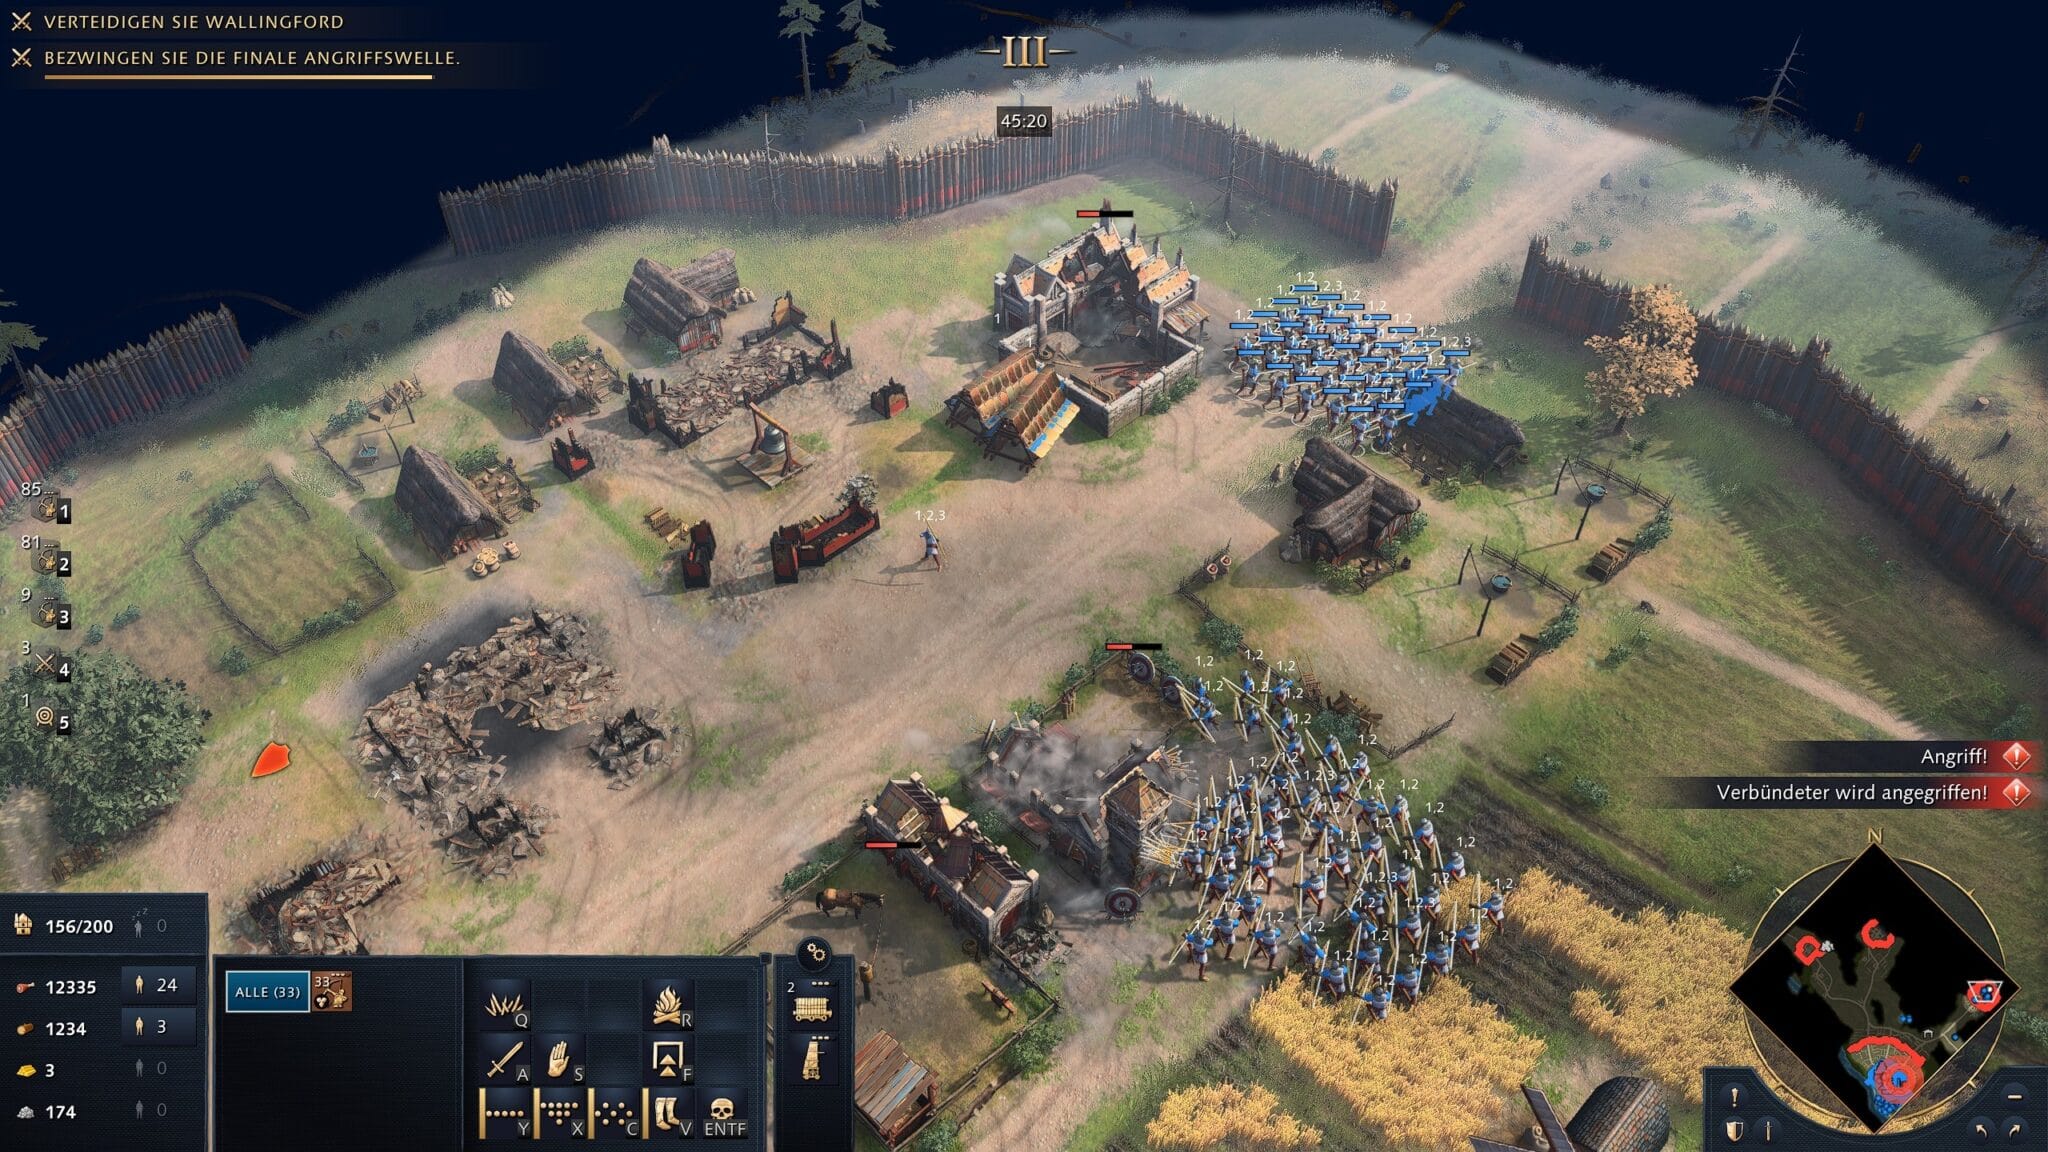 对于单人玩家，《帝国时代4》基本上只提供战役。在这里，我们干掉了敌人防守极为严密的营地，尽管我们实际上只应该保卫城市。